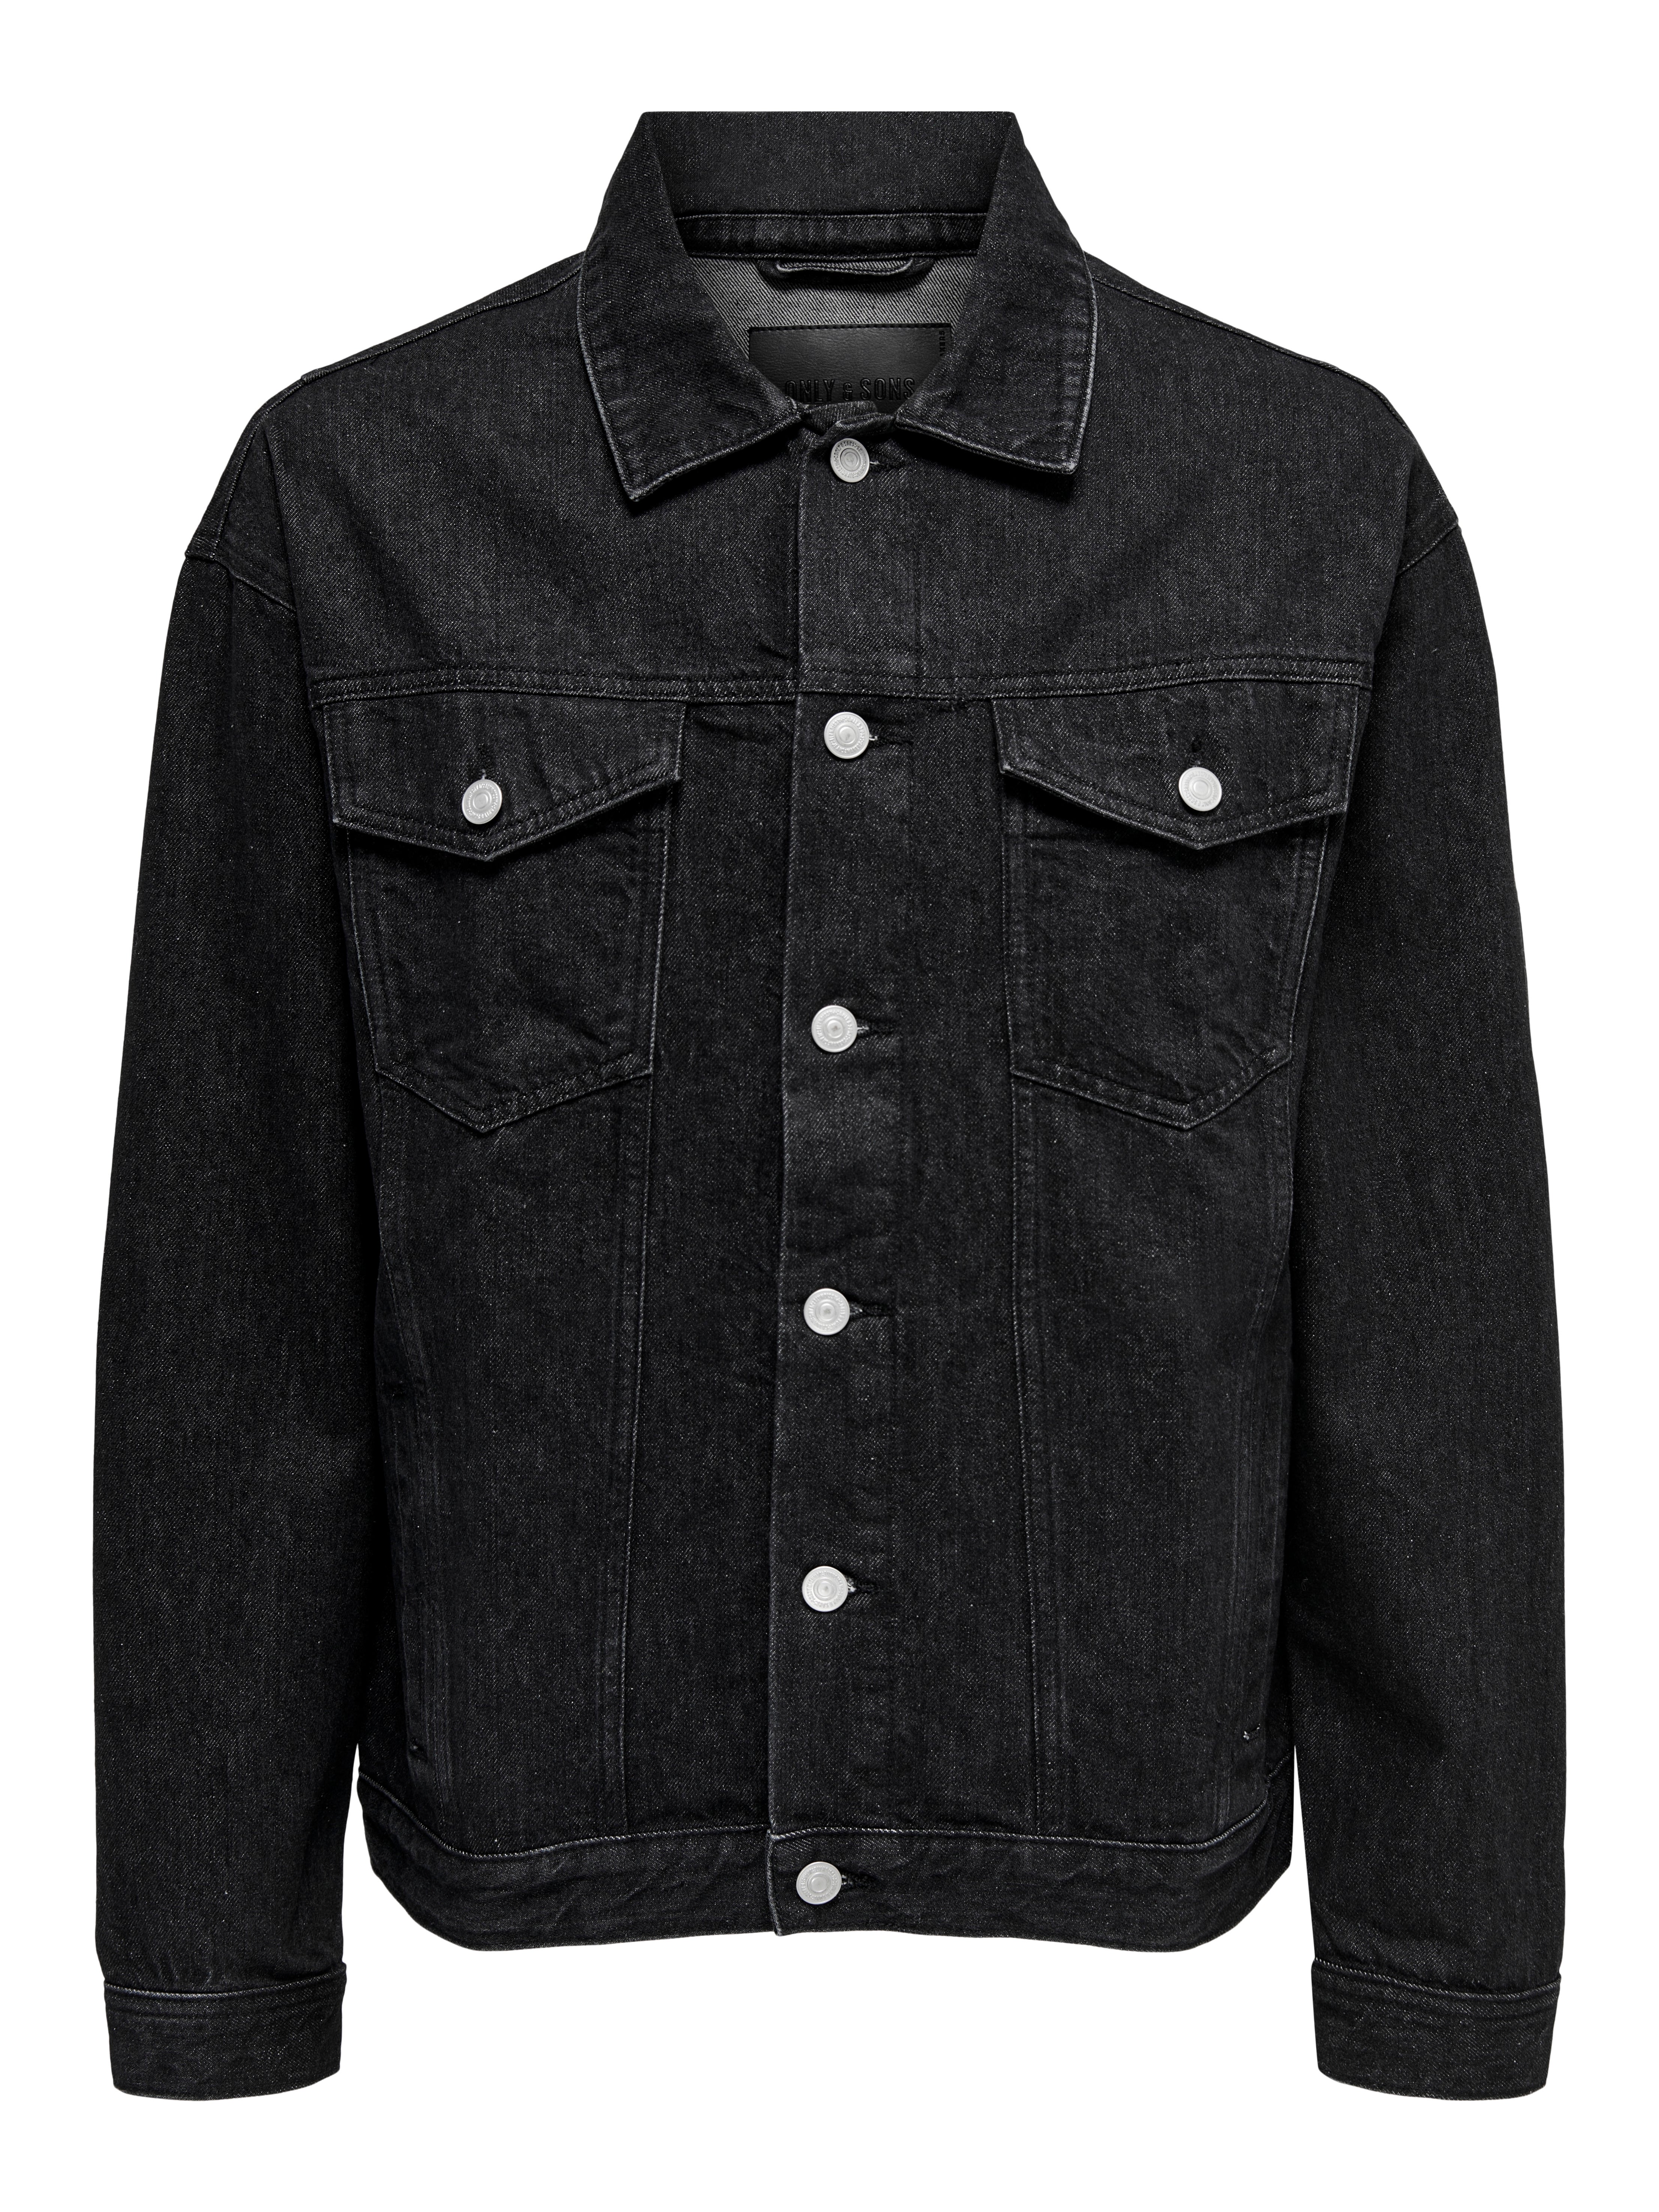 loose fit denim jacket | Black | ONLY & SONS®